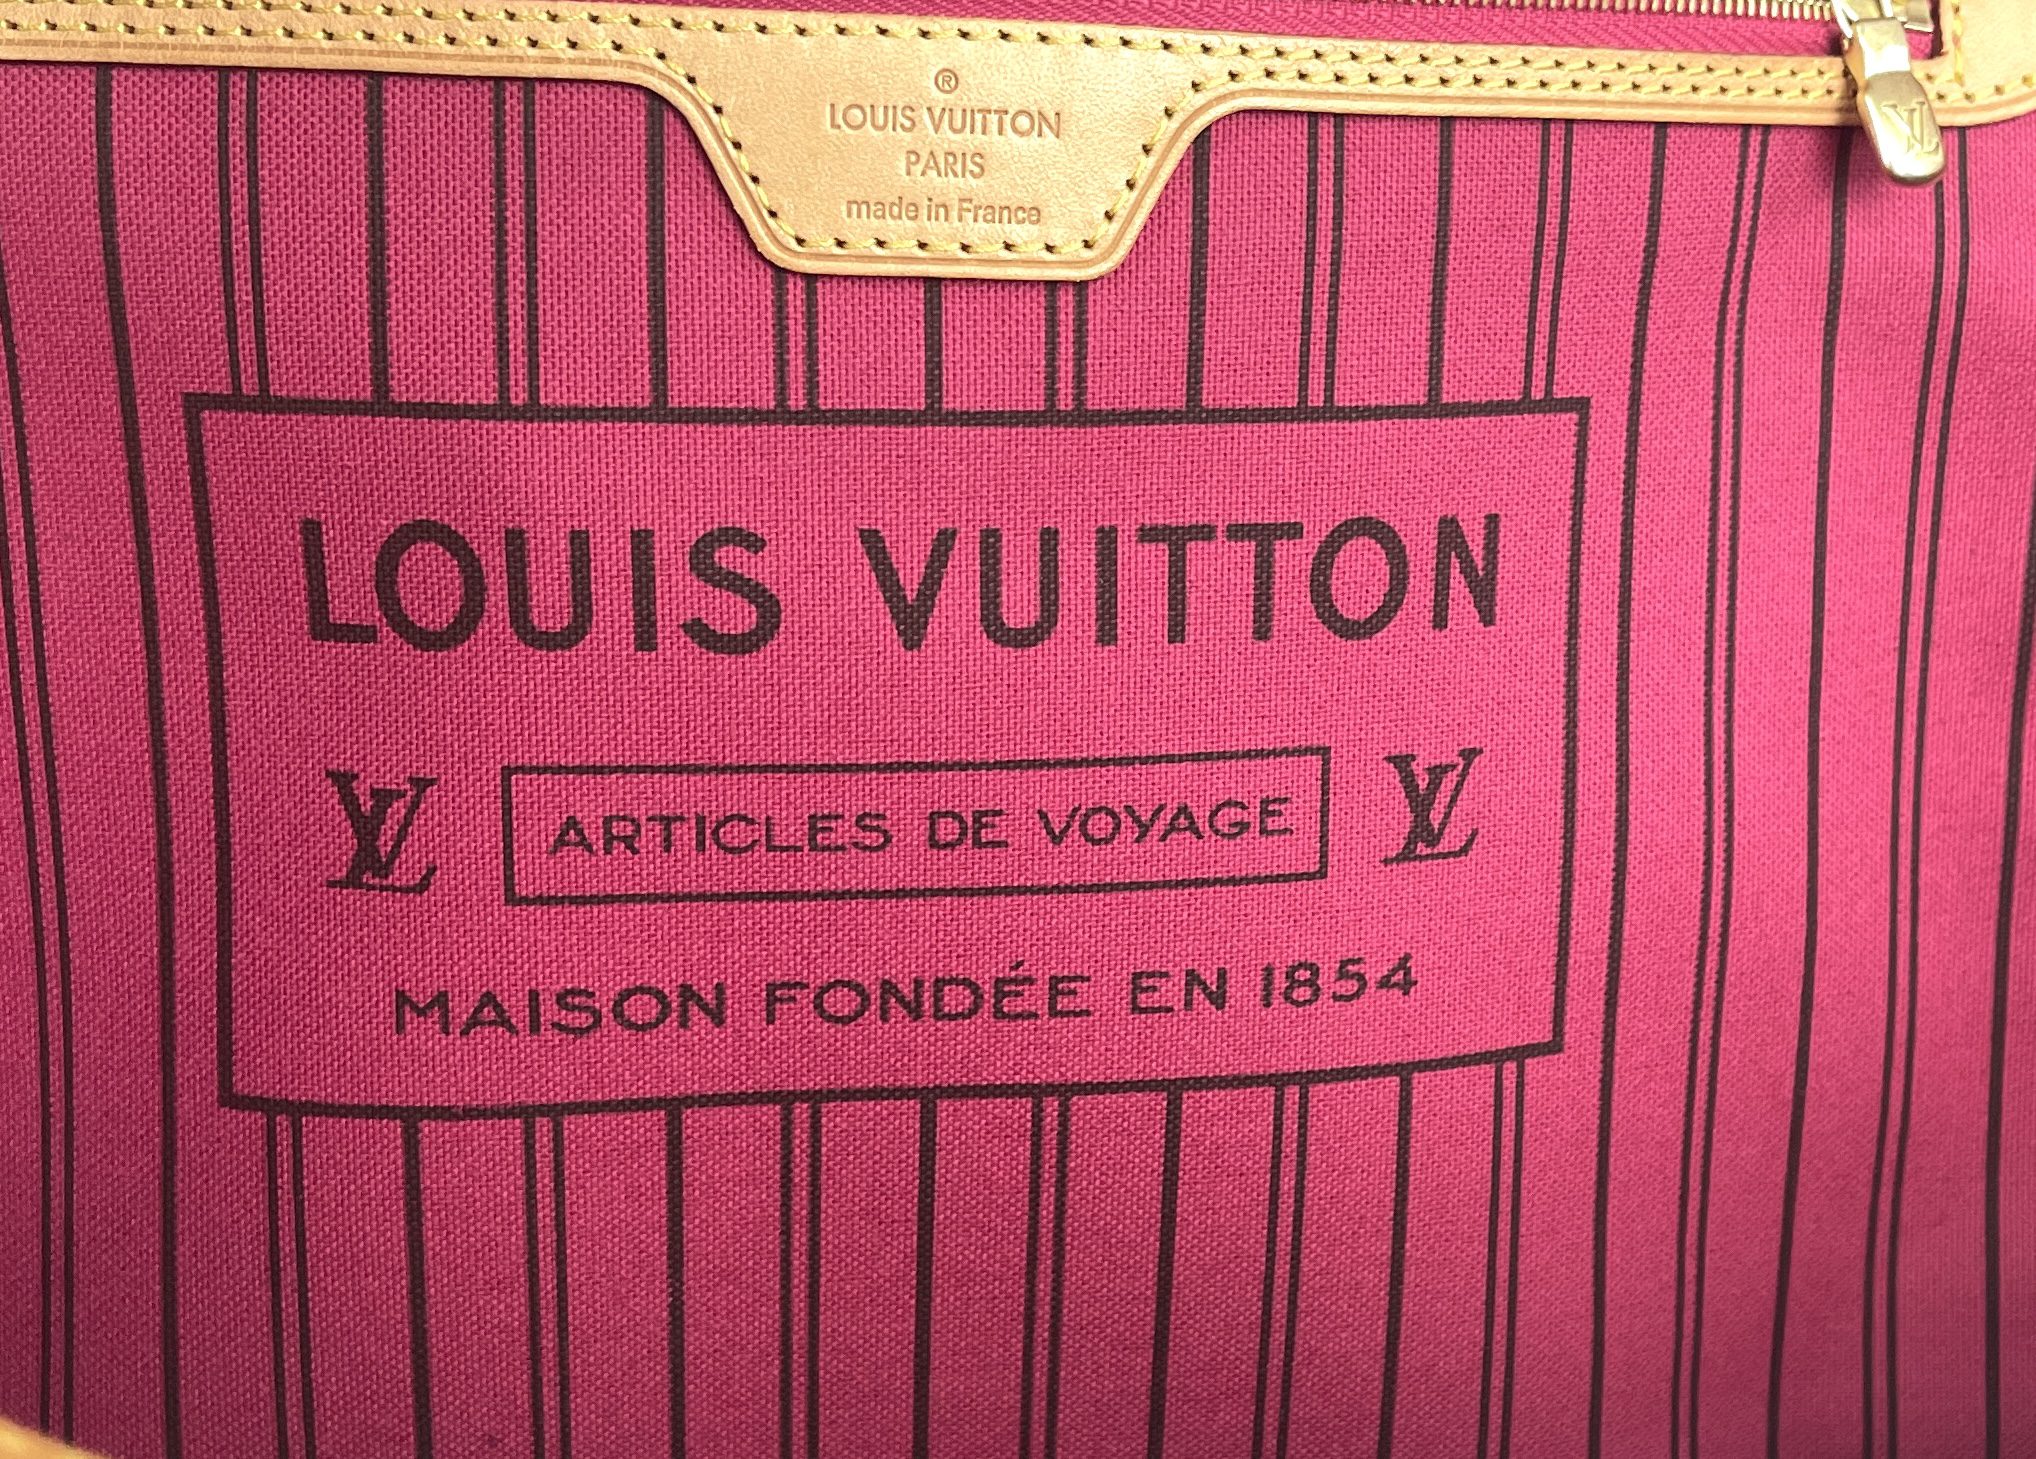 Louis Vuitton Articles DE Voyage Maison Fondee EN 1854 for Sale in